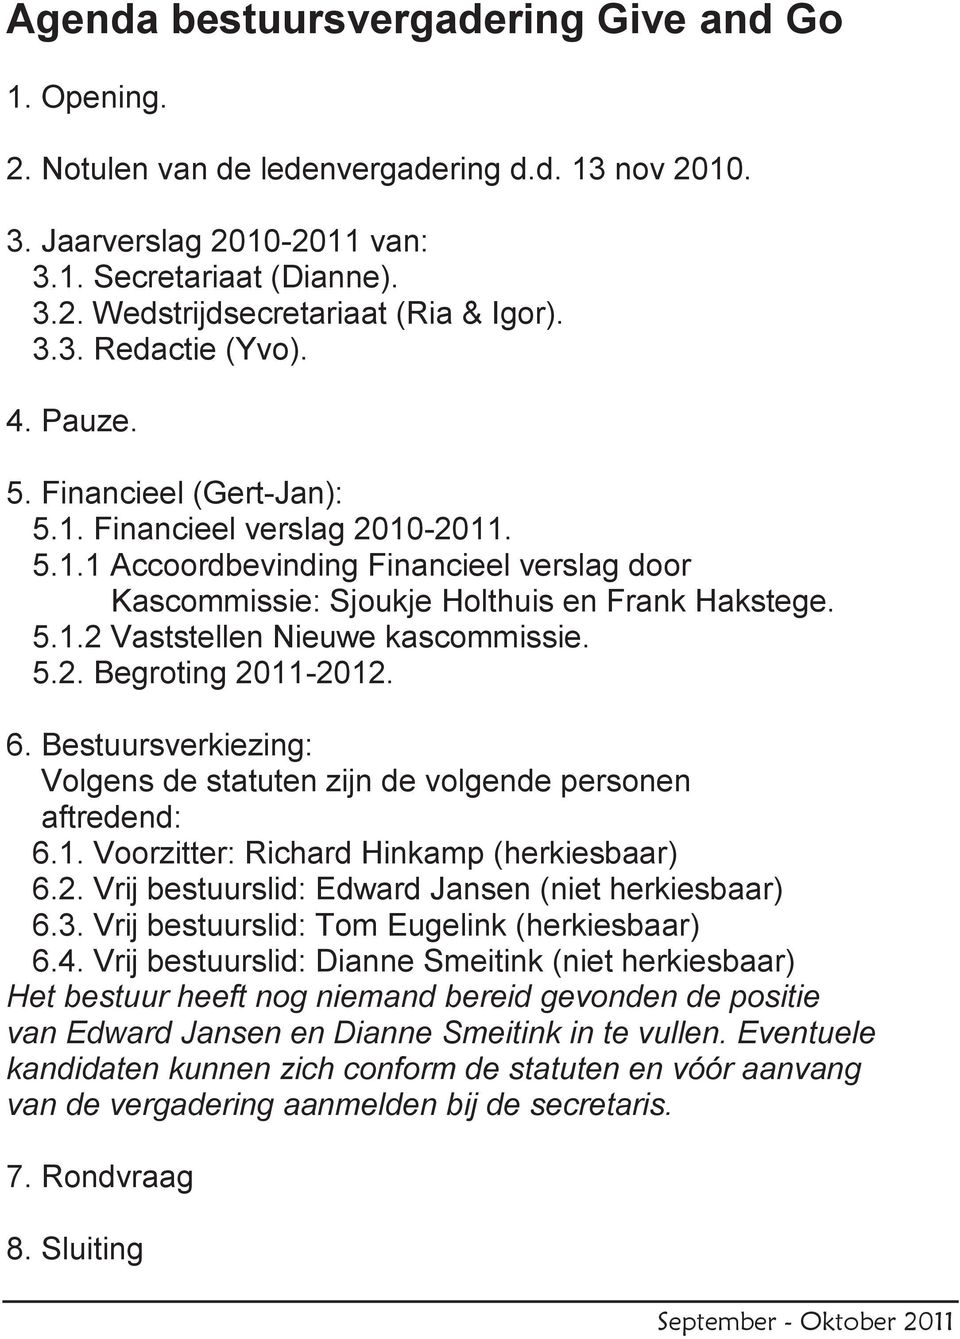 5.2. Begroting 2011-2012. 6. Bestuursverkiezing: Volgens de statuten zijn de volgende personen aftredend: 6.1. Voorzitter: Richard Hinkamp (herkiesbaar) 6.2. Vrij bestuurslid: Edward Jansen (niet herkiesbaar) 6.